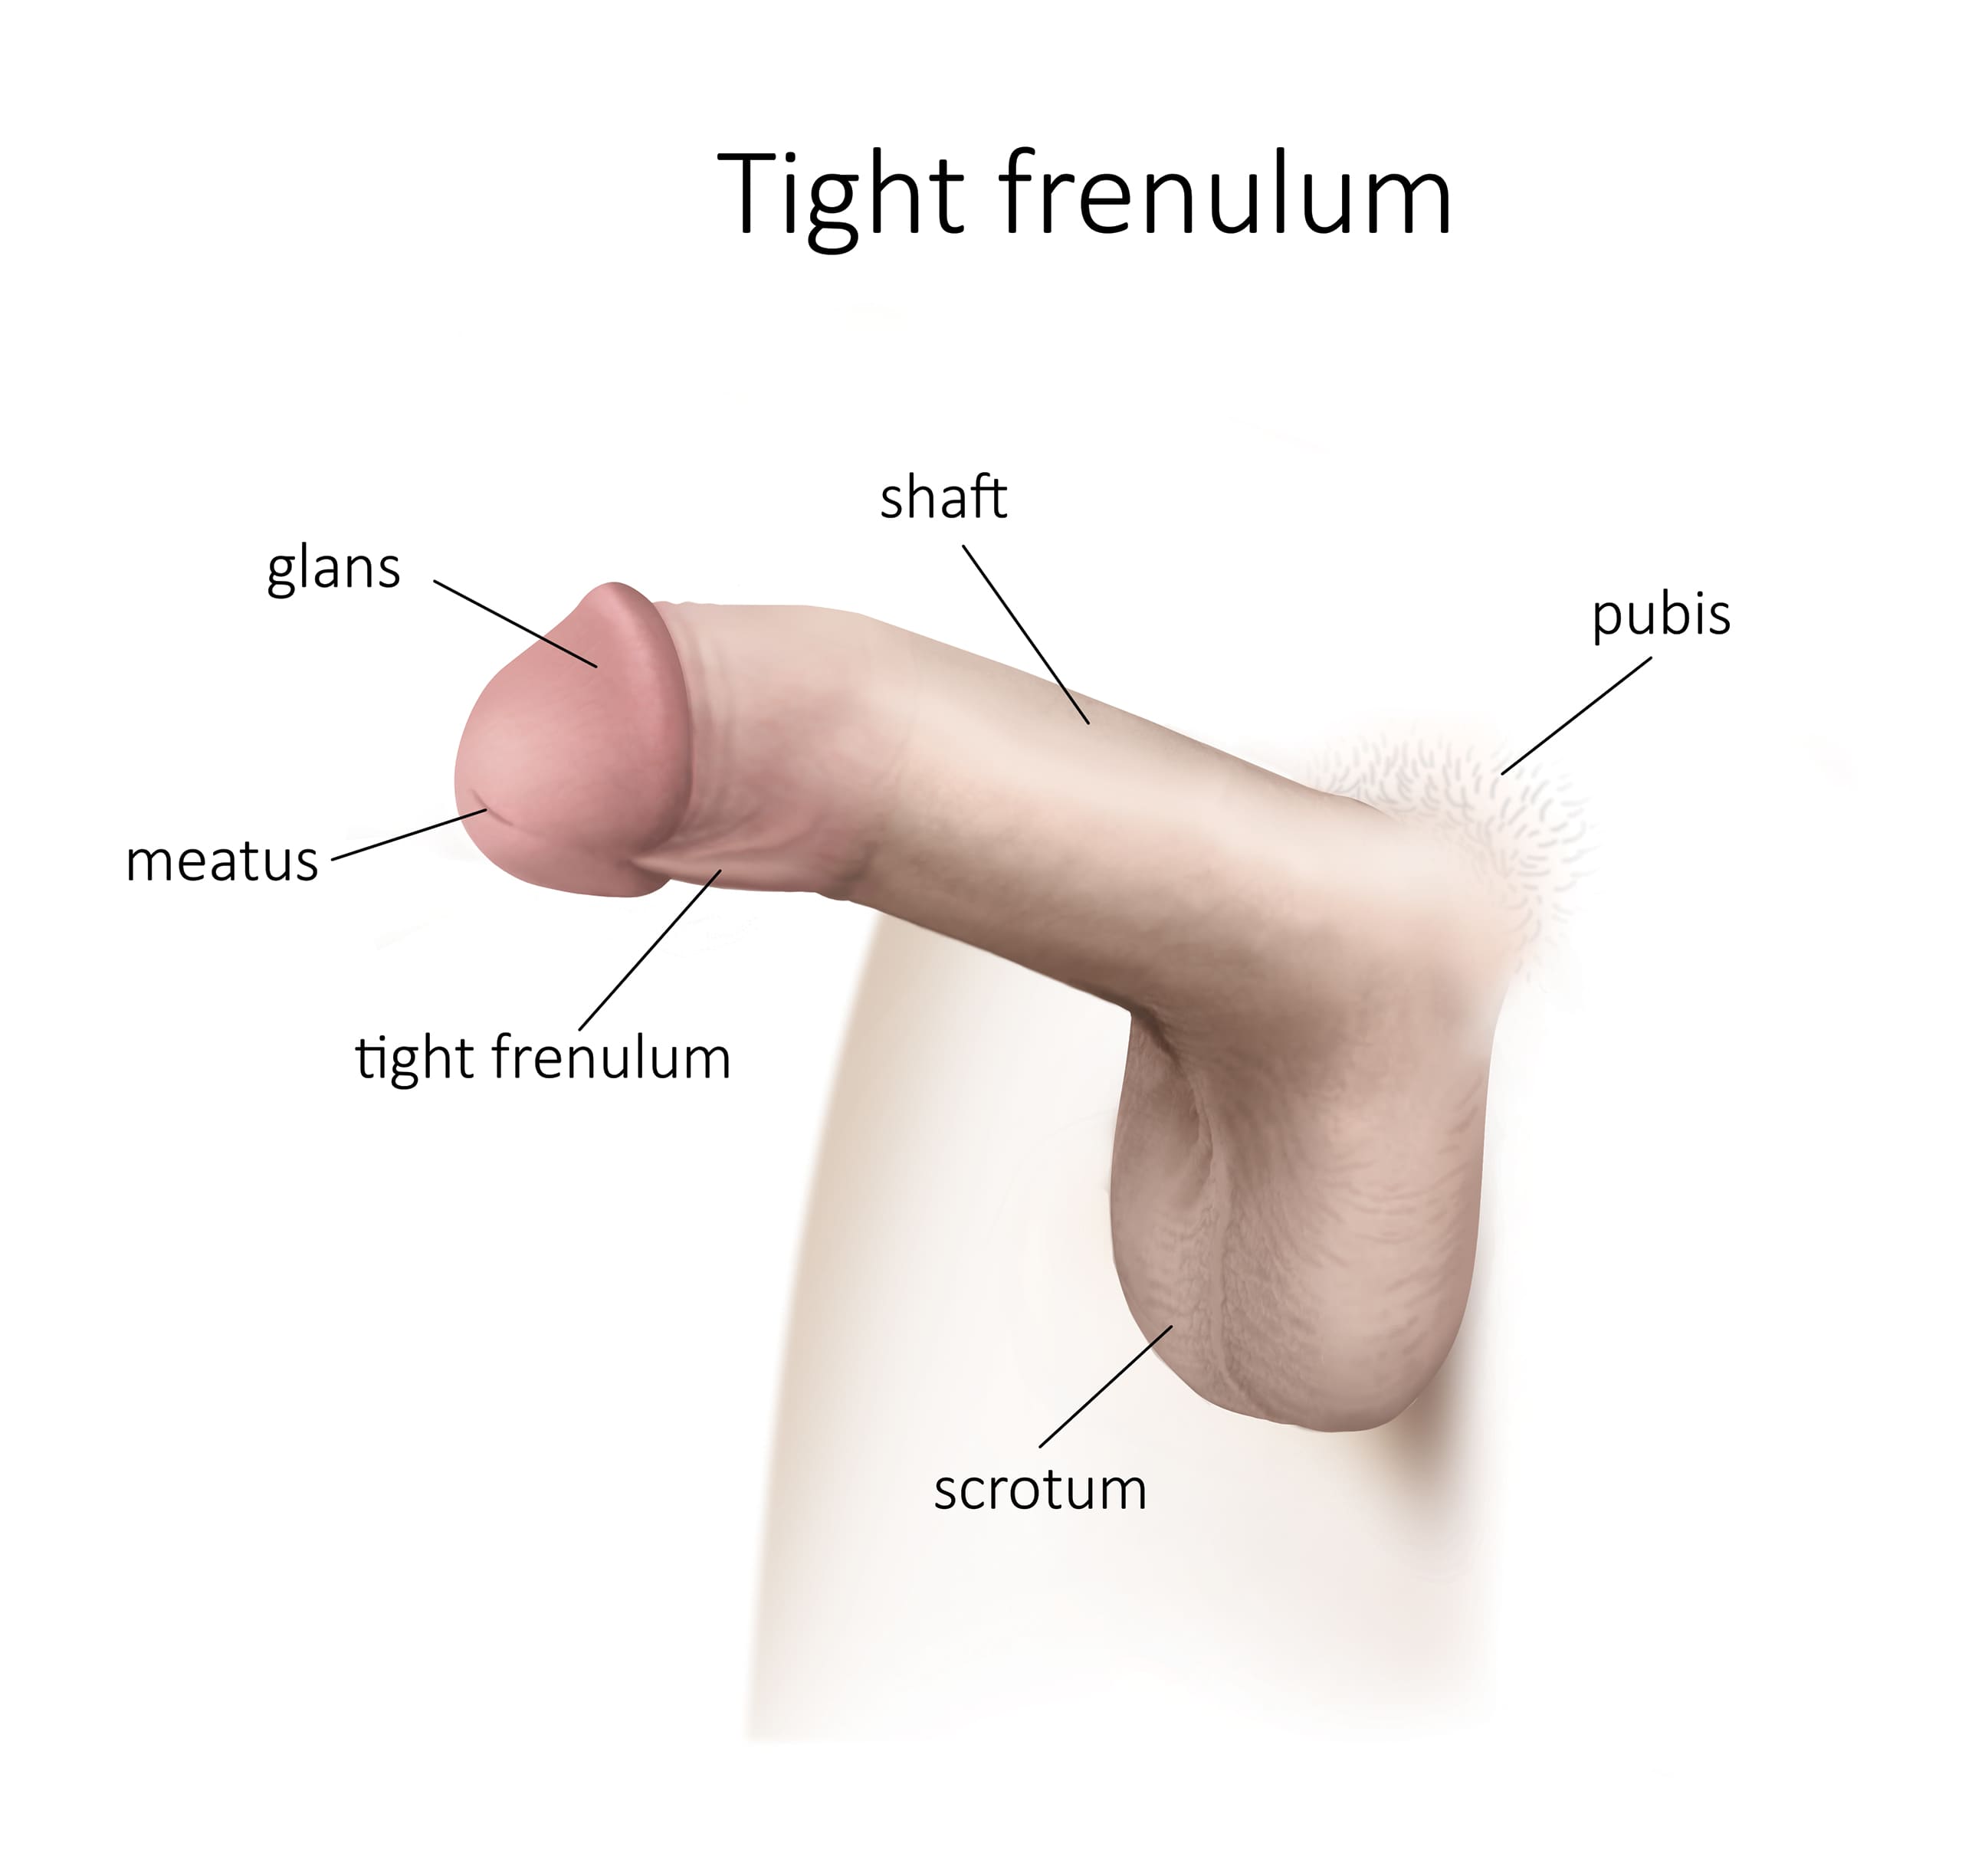 Frenectomy or lengthening of the penile frenulum